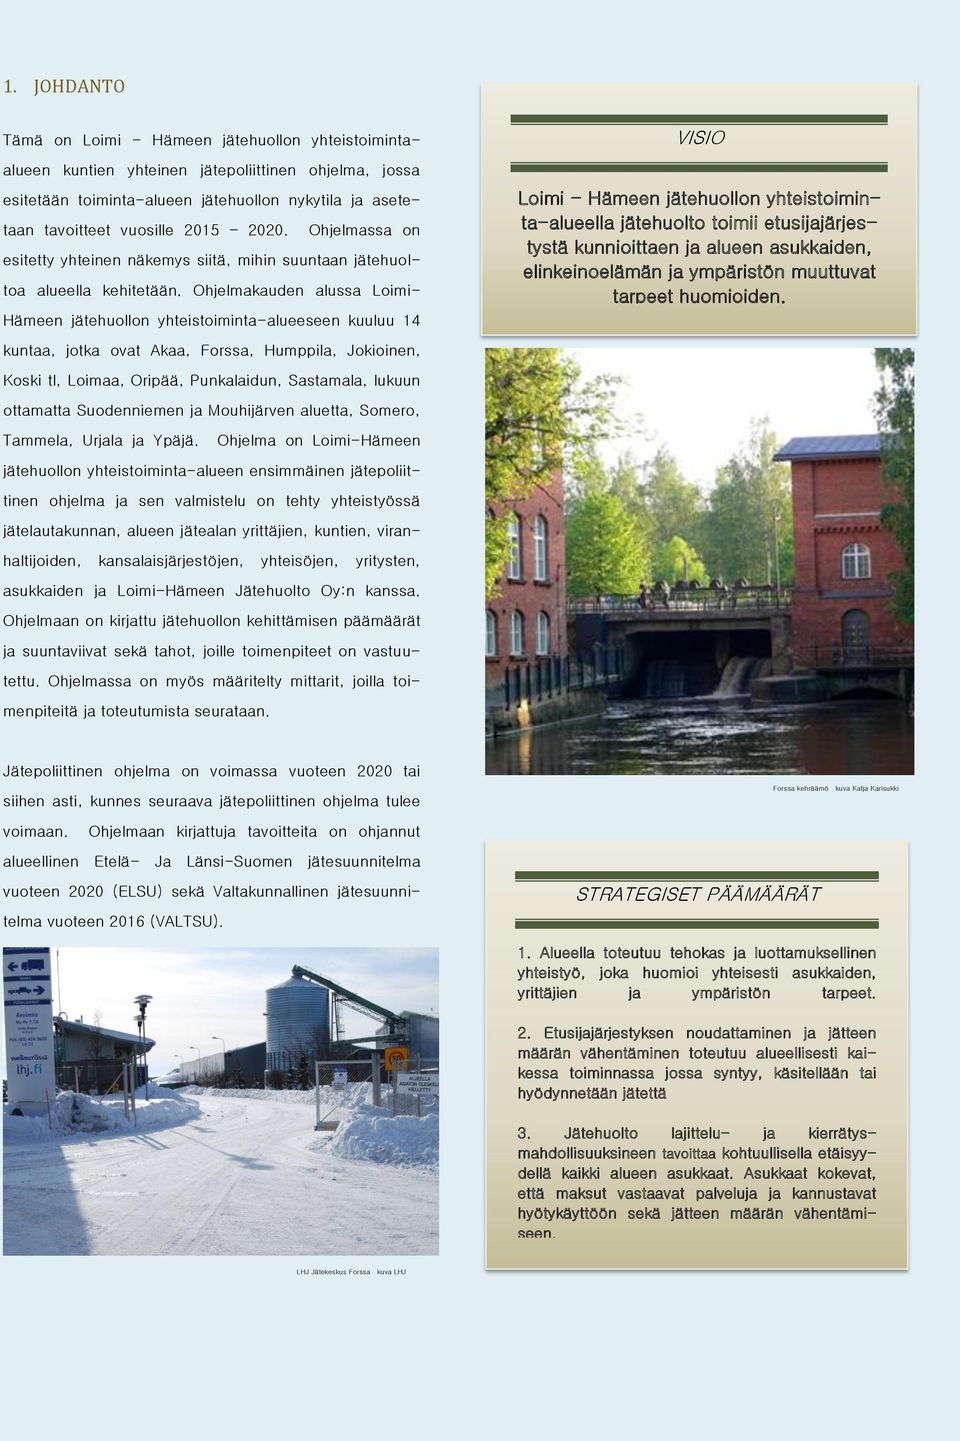 Ohjelmakauden alussa Loimi- Hämeen jätehuollon yhteistoiminta-alueeseen kuuluu 14 kuntaa, jotka ovat Akaa, Forssa, Humppila, Jokioinen, VISIO Loimi - Hämeen jätehuollon yhteistoiminta-alueella